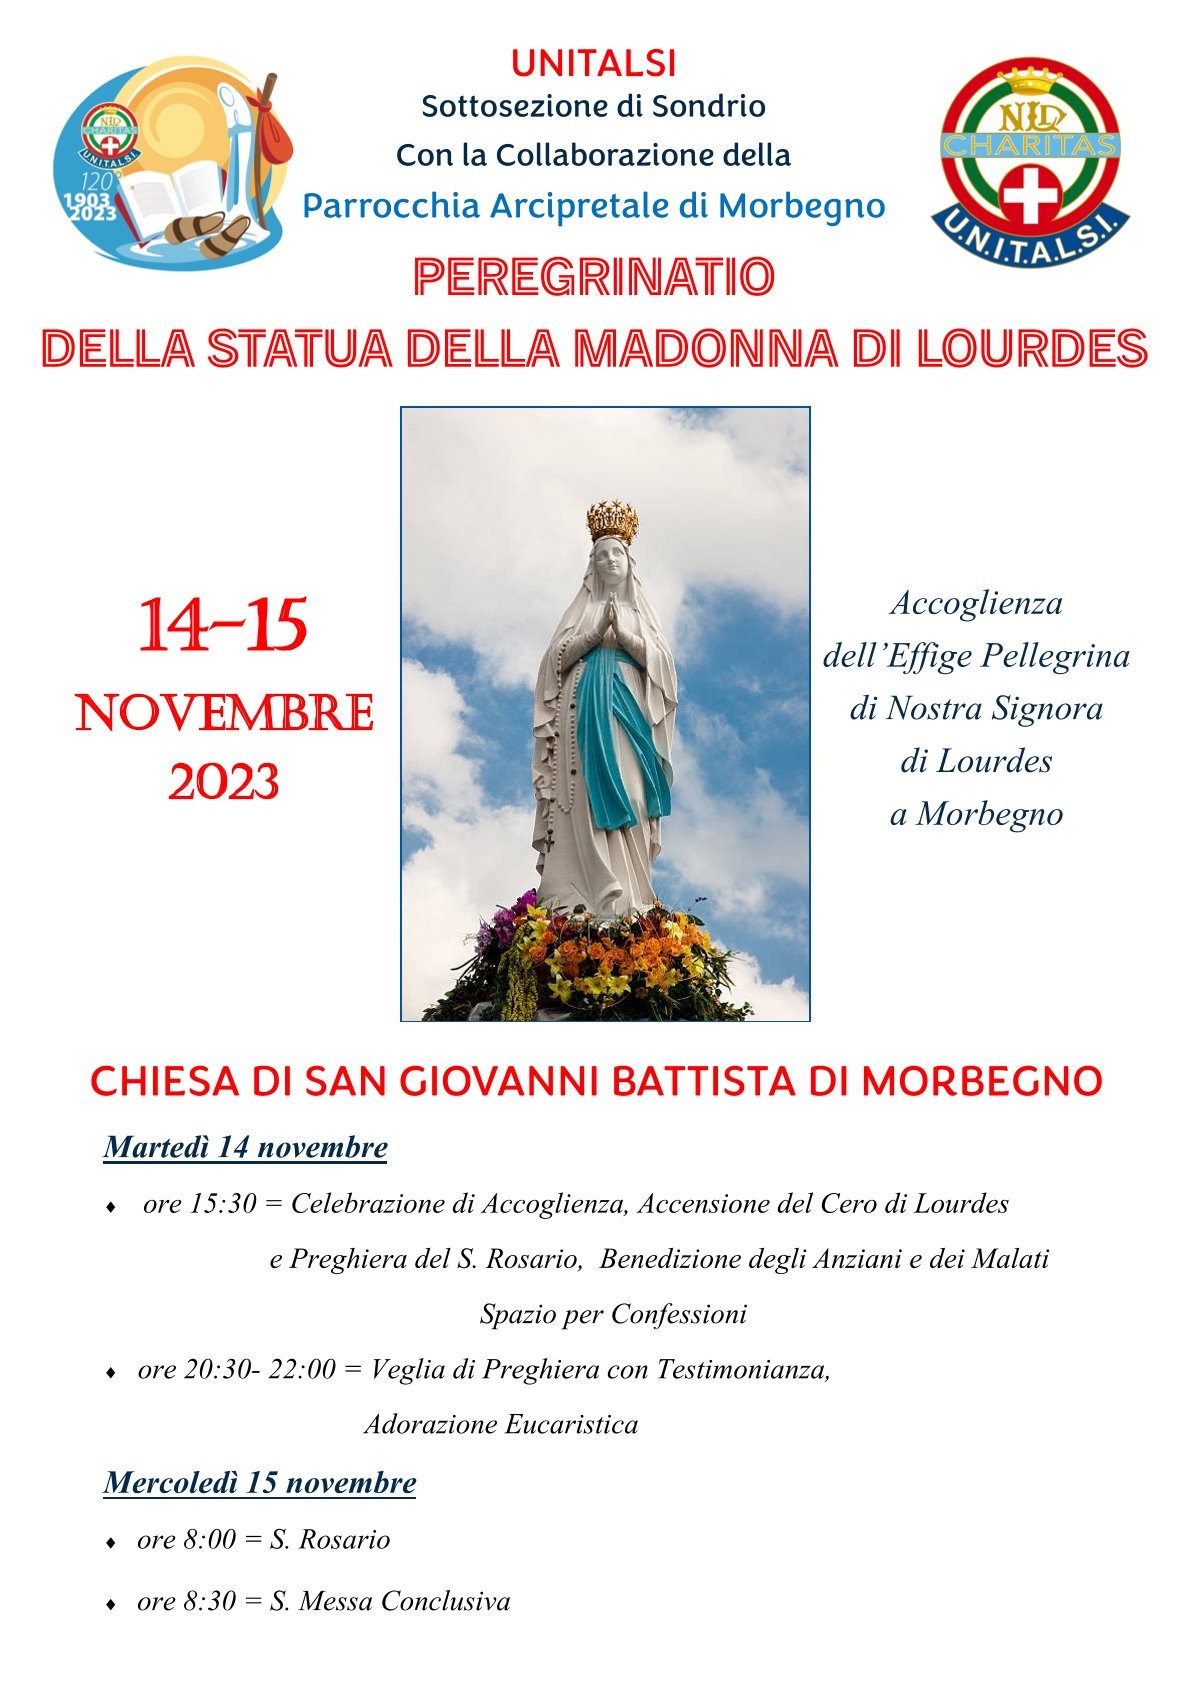 Peregrinatio della statua della Madonna di Lourdes